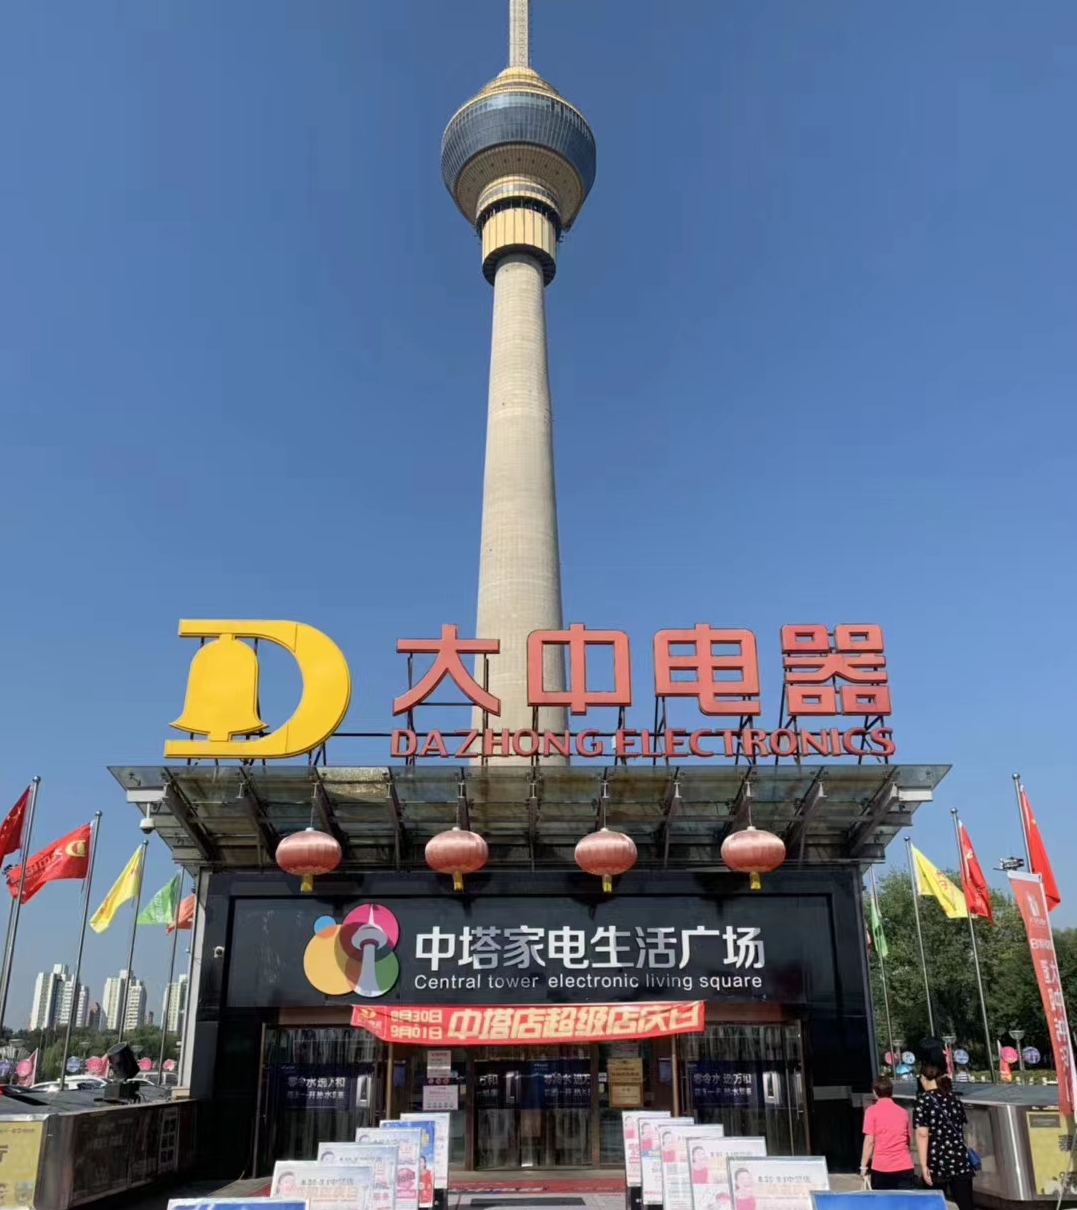 真快乐APP和大中电器全力保障北京货品供应 满足市民特殊时期的生活需求 智能公会